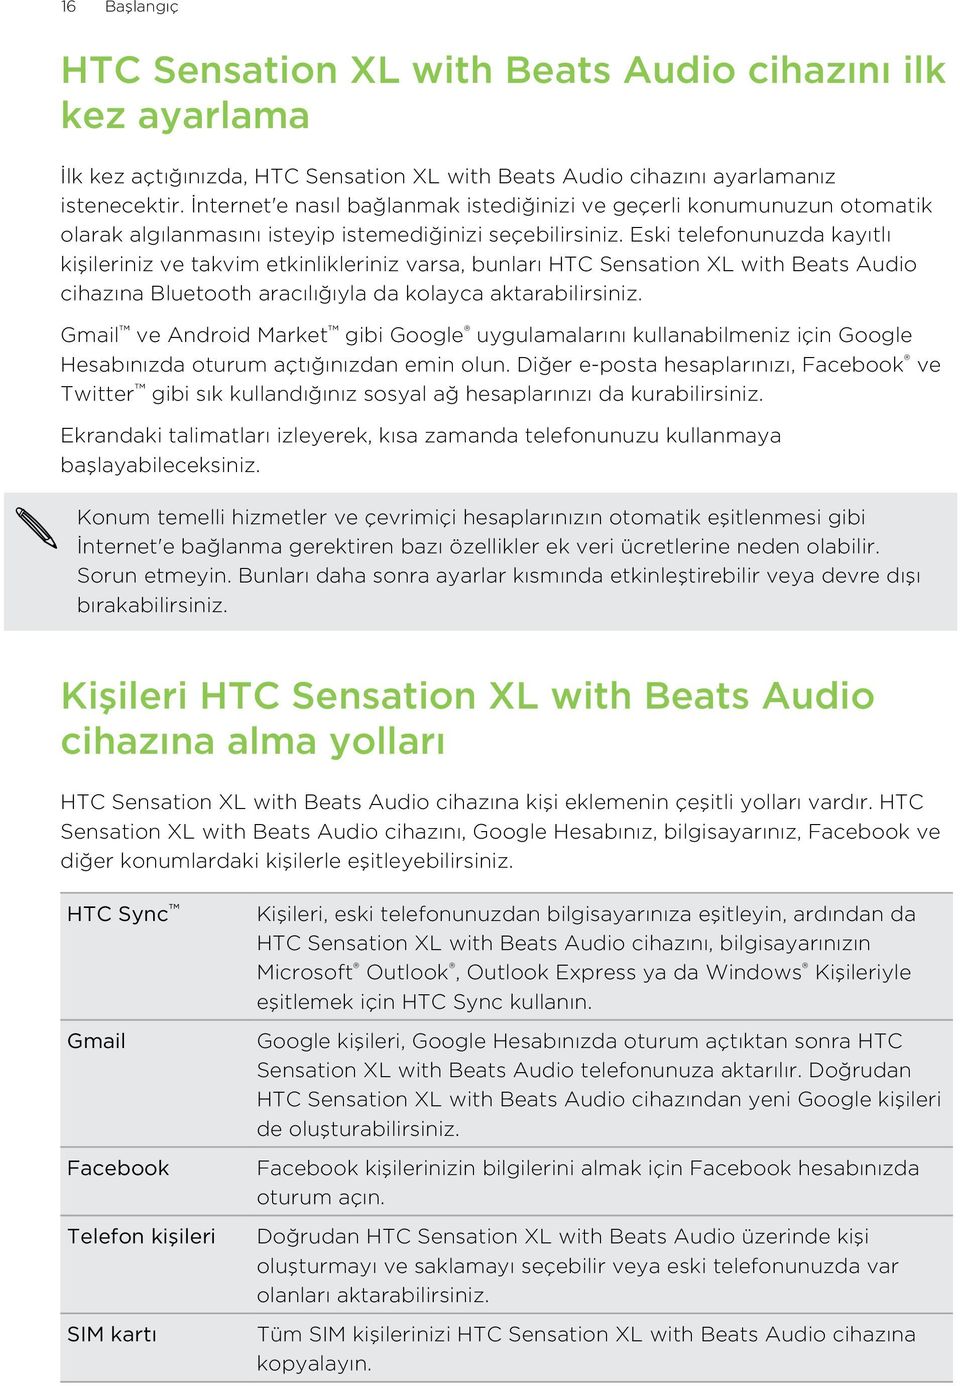 Eski telefonunuzda kayıtlı kişileriniz ve takvim etkinlikleriniz varsa, bunları HTC Sensation XL with Beats Audio cihazına Bluetooth aracılığıyla da kolayca aktarabilirsiniz.